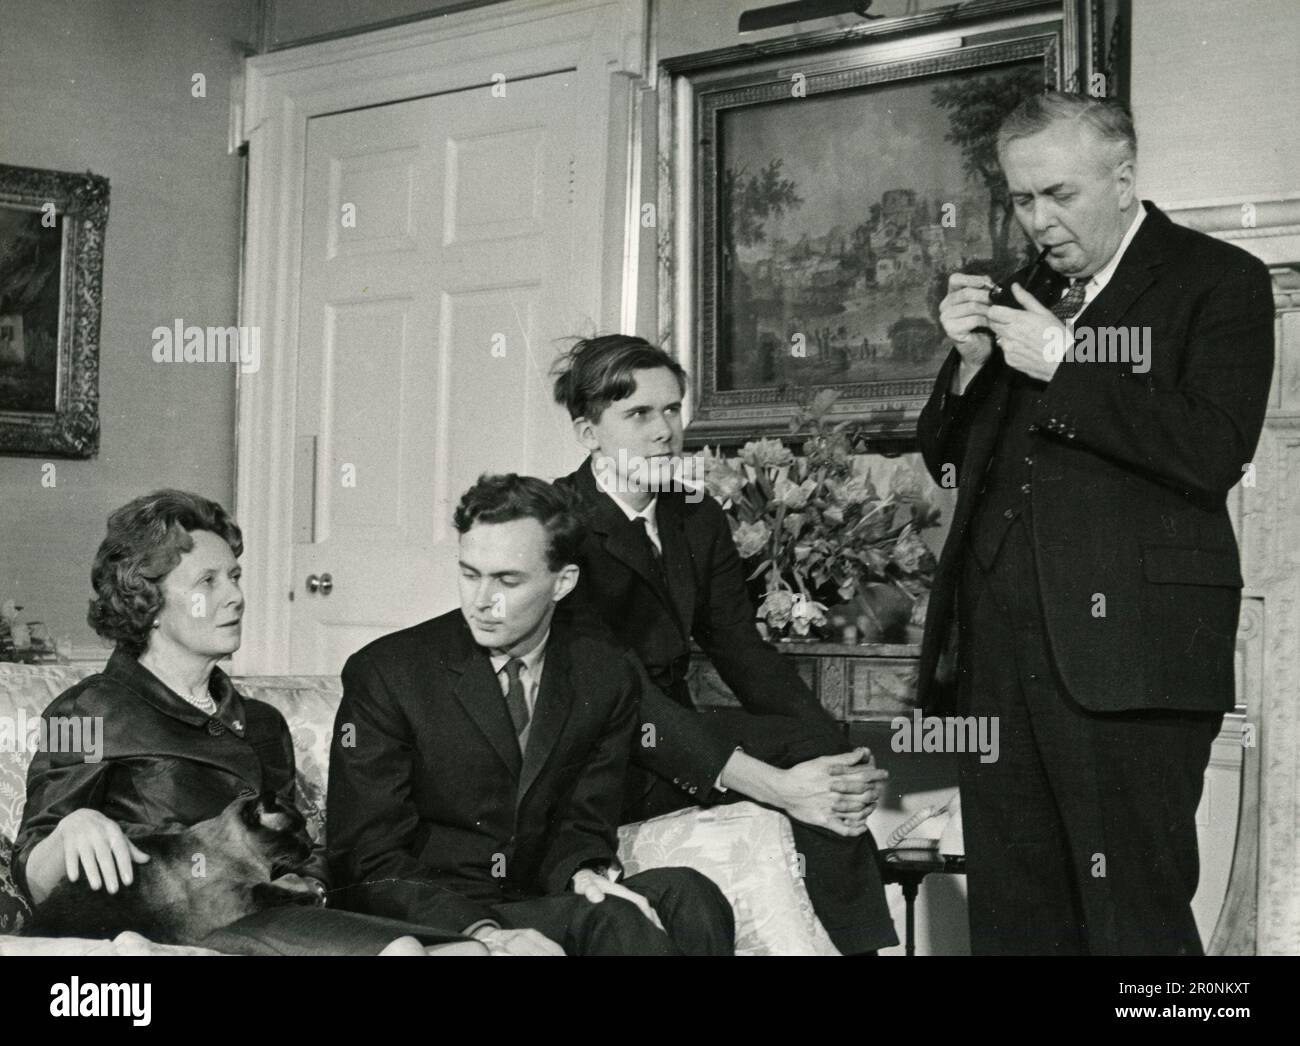 El primer ministro británico Harold Wilson con su esposa y familia en su residencia oficial en 10 Dowing Street, Londres, Inglaterra, 1965 Foto de stock